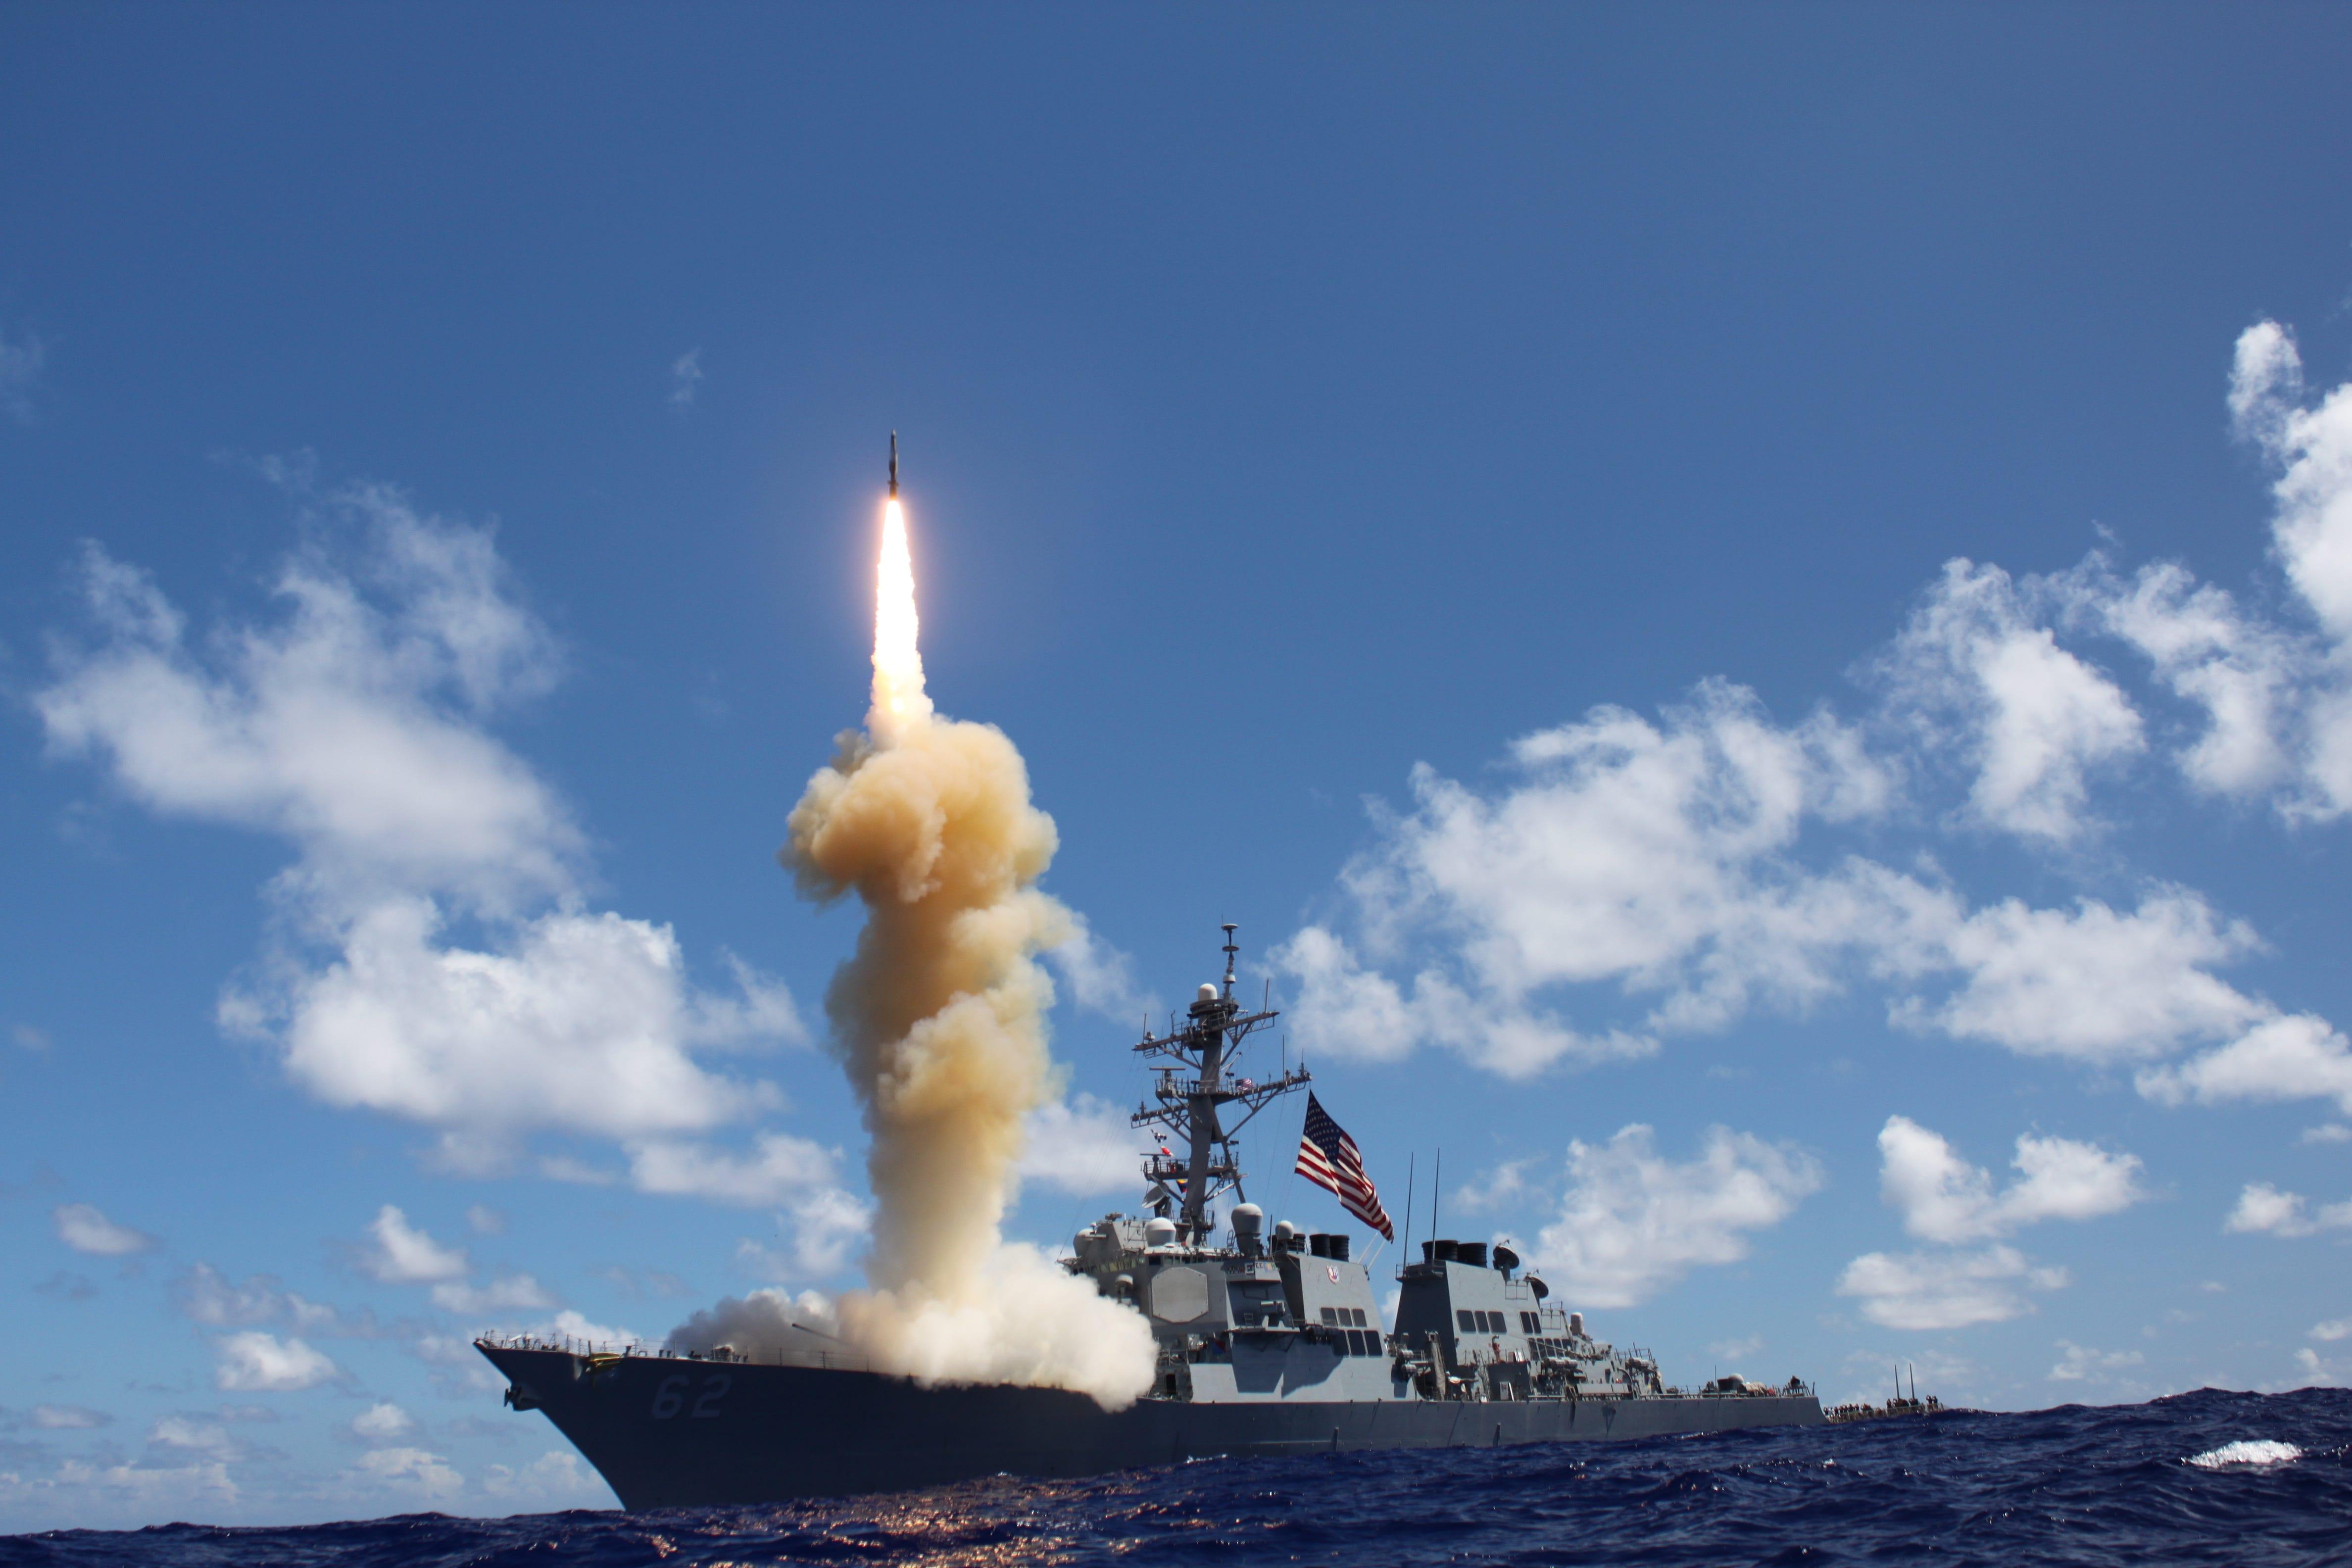 アメリカ海軍が初めて実戦で使用したミサイル「SM-3」とは…大気圏外での迎撃能力も